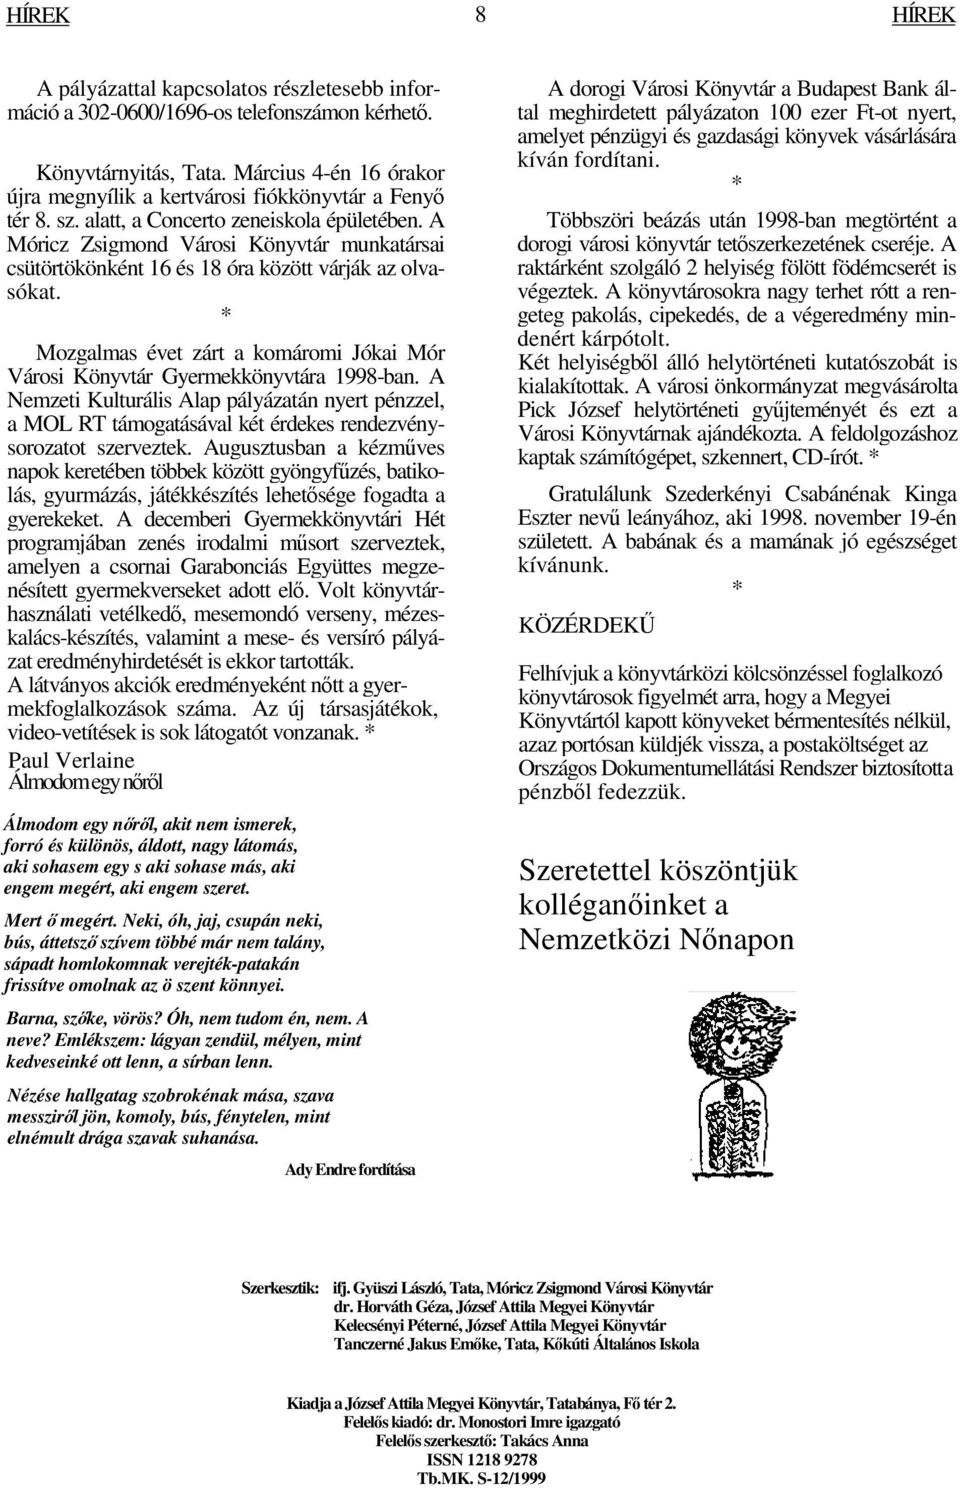 A Móricz Zsigmond Városi Könyvtár munkatársai csütörtökönként 16 és 18 óra között várják az olvasókat. Mozgalmas évet zárt a komáromi Jókai Mór Városi Könyvtár Gyermekkönyvtára 1998-ban.